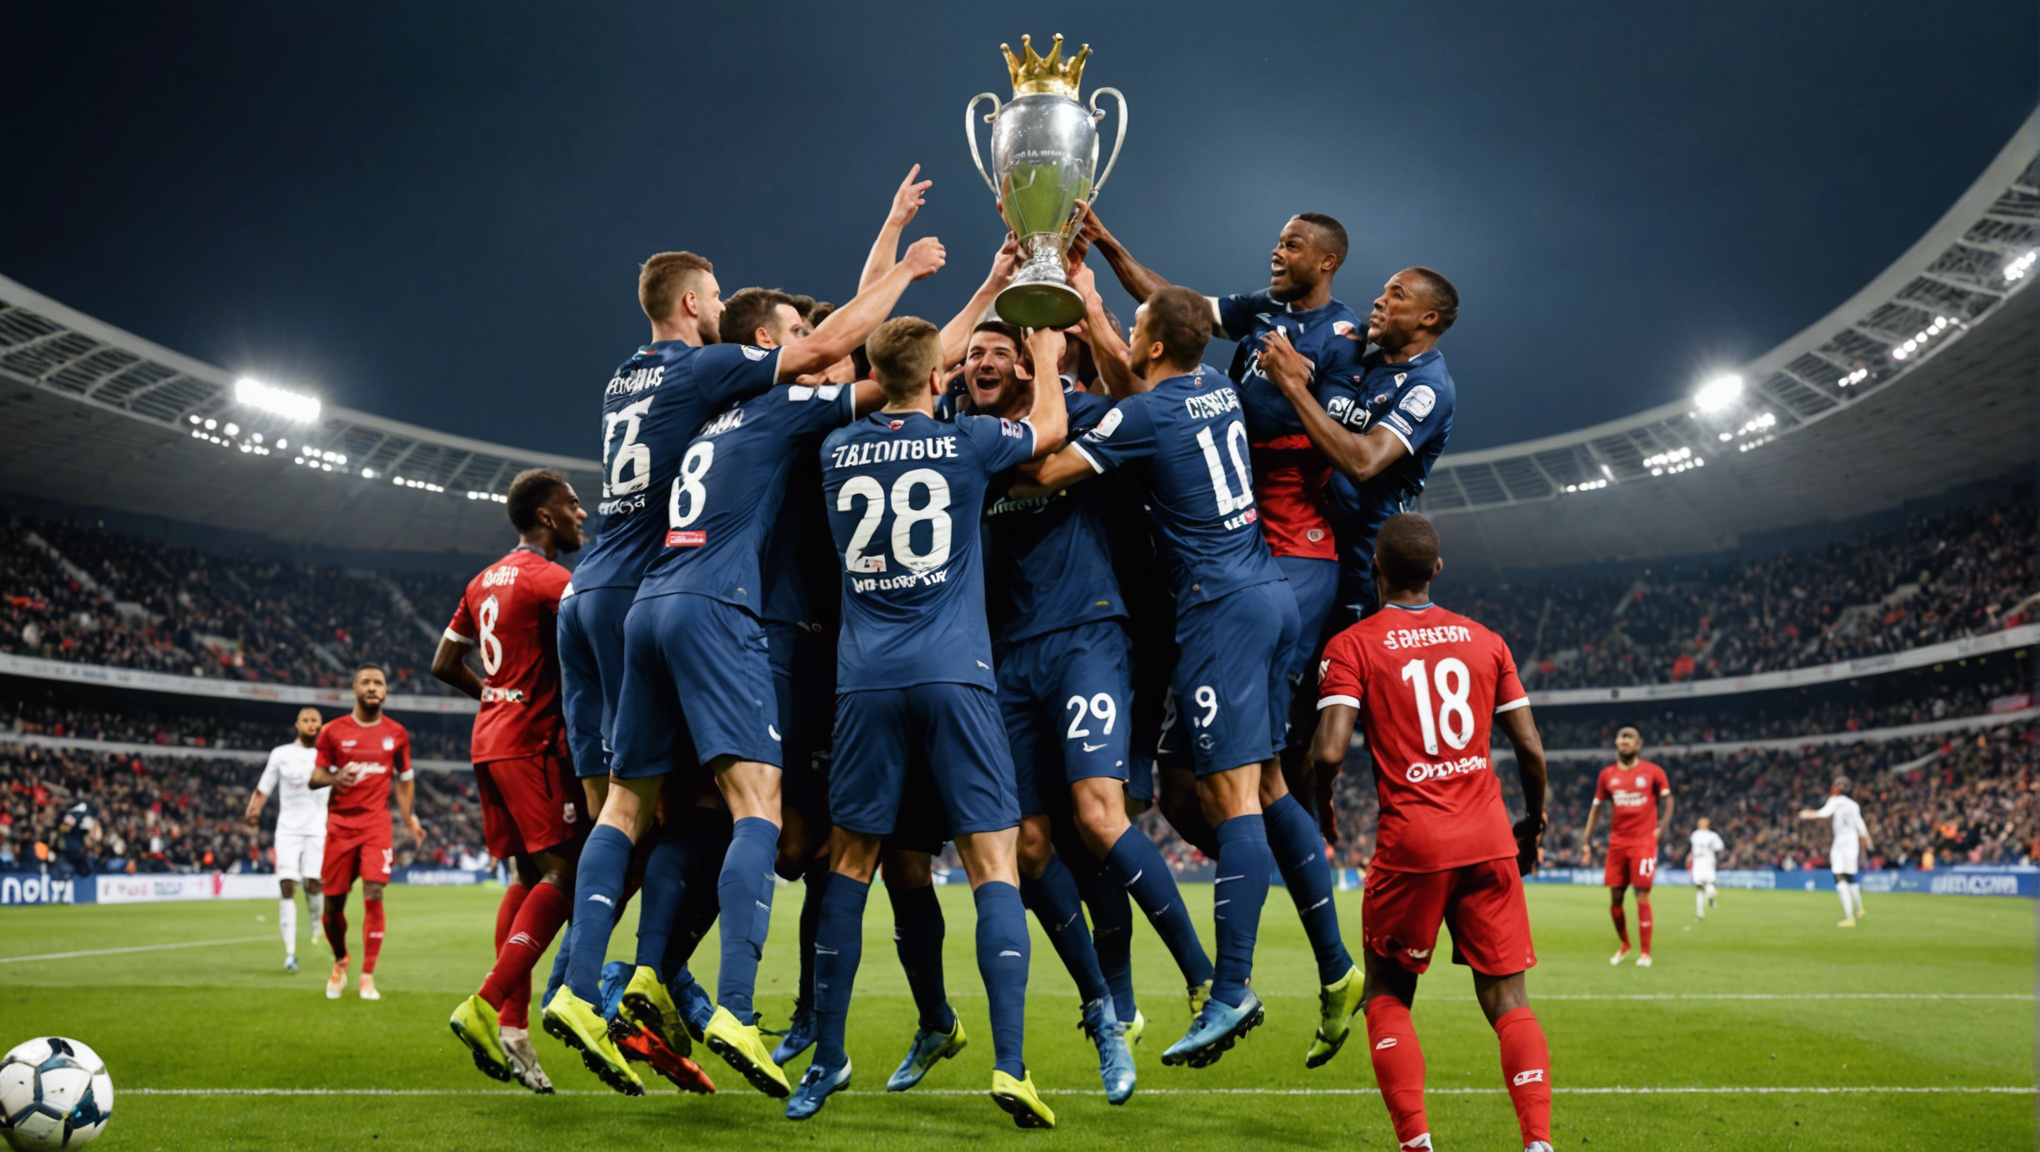 le barrage entre la ligue 2 et le national 1 est de retour. découvrez qui décrochera le précieux ticket pour l'ascension vers le sommet du football français.